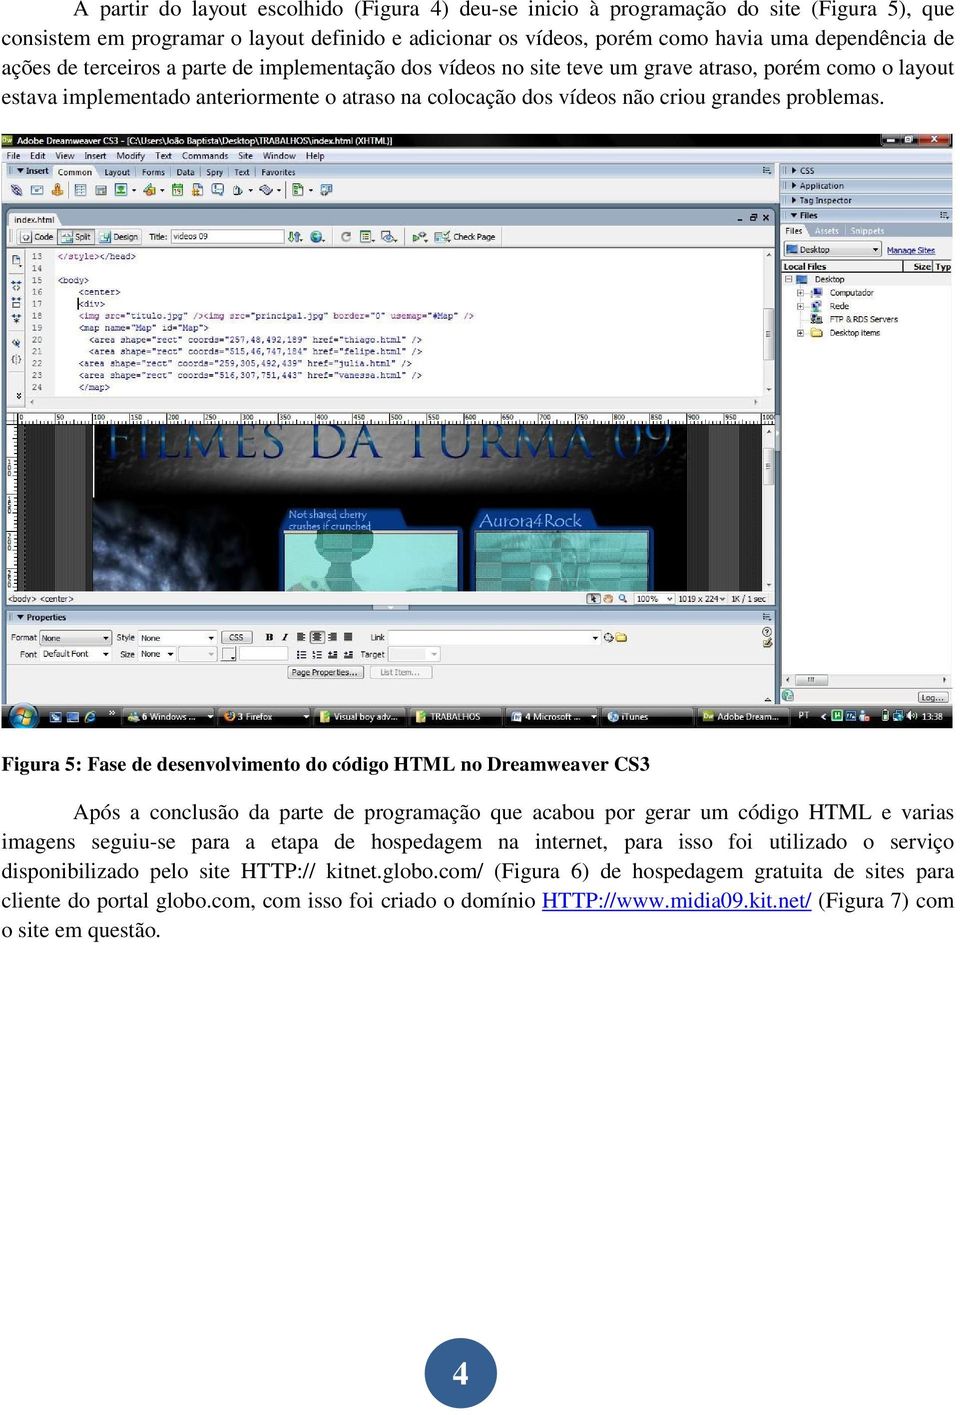 Figura 5: Fase de desenvolvimento do código HTML no Dreamweaver CS3 Após a conclusão da parte de programação que acabou por gerar um código HTML e varias imagens seguiu-se para a etapa de hospedagem